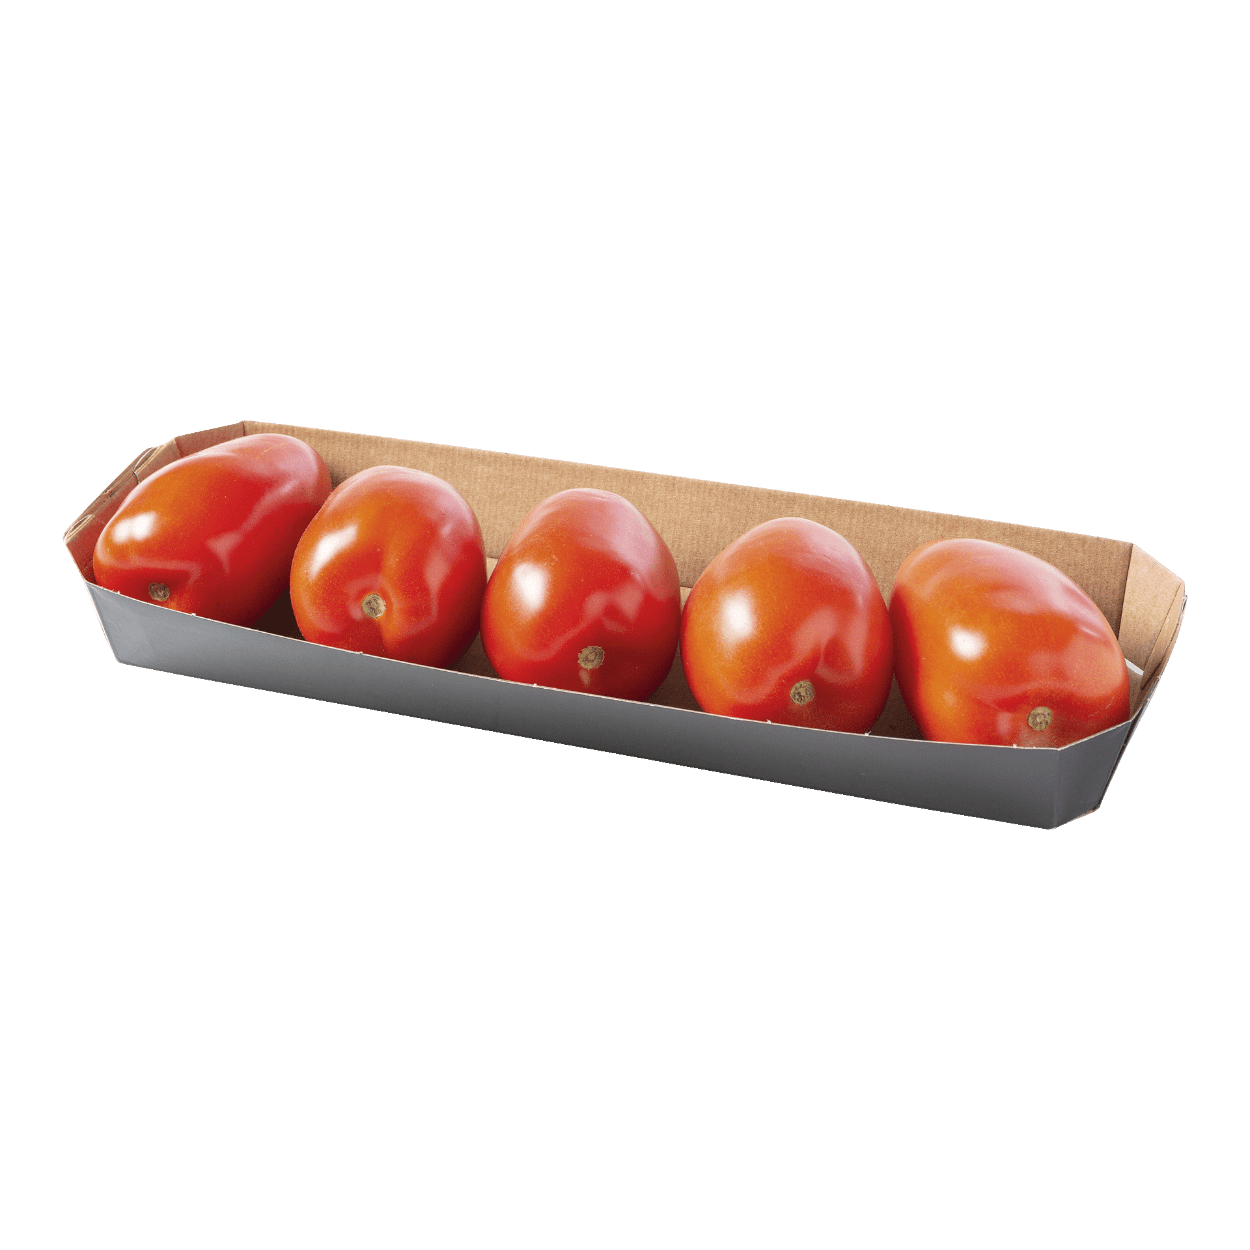 middelen klif Baars San Marzano-tomaten kopen bij ALDI België